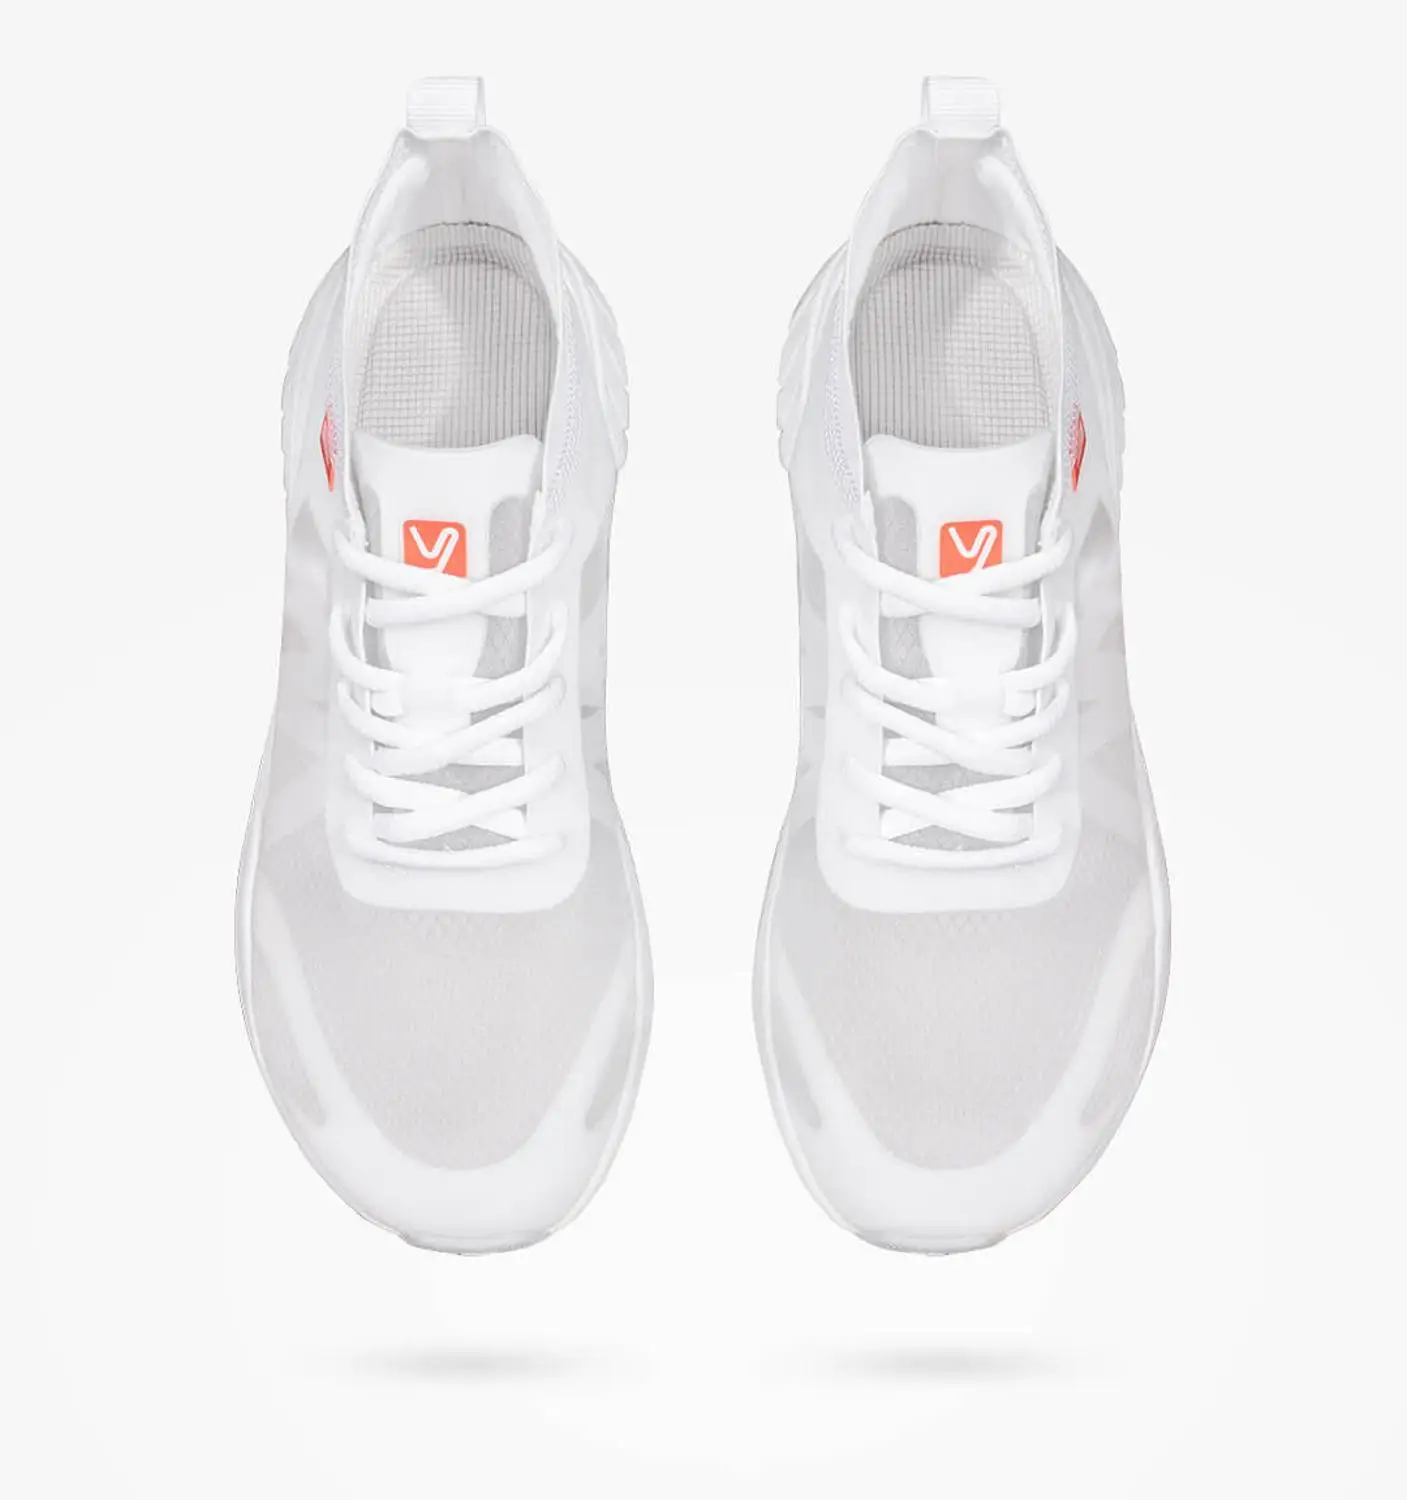 Xiaomi YUNCOO Легкая спортивная обувь из прозрачной моно пряжи легкая и быстросохнущая Мужская и женская дышащая повседневная обувь - Цвет: white 36